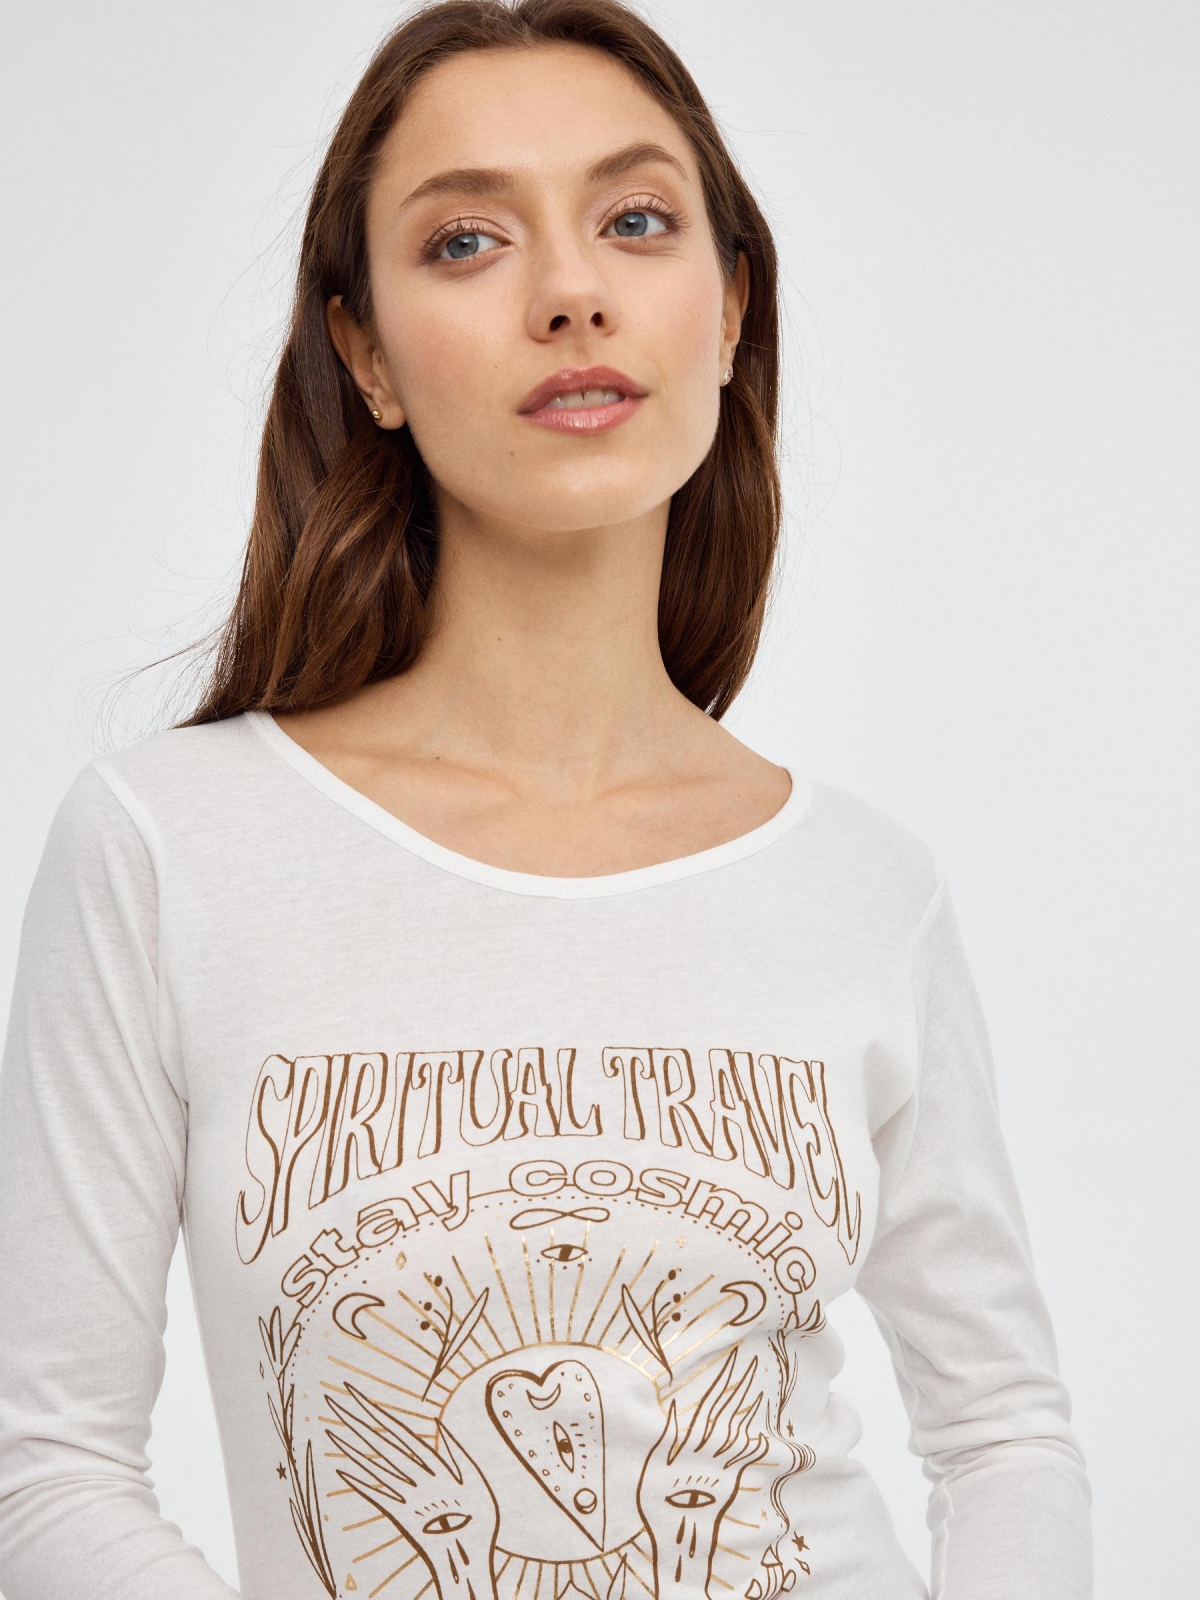 T-shirt de Spiritual Travel off white vista detalhe